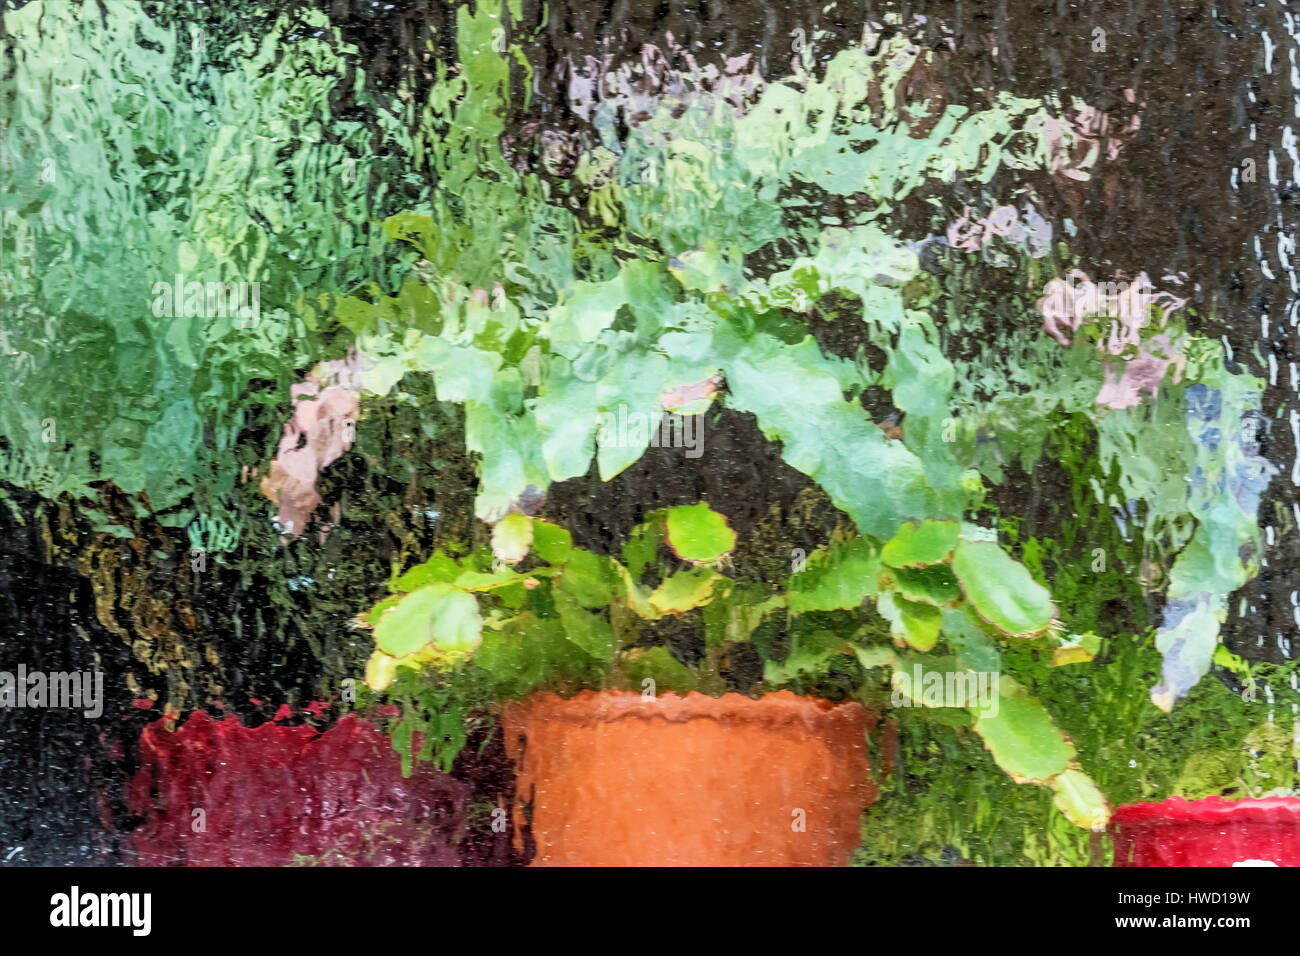 Potted plants in the greenhouse, symbol for protection, growth, care, Topfpflanzen im Gewächshaus, Symbol für Schutz, Wachstum, Pflege Stock Photo